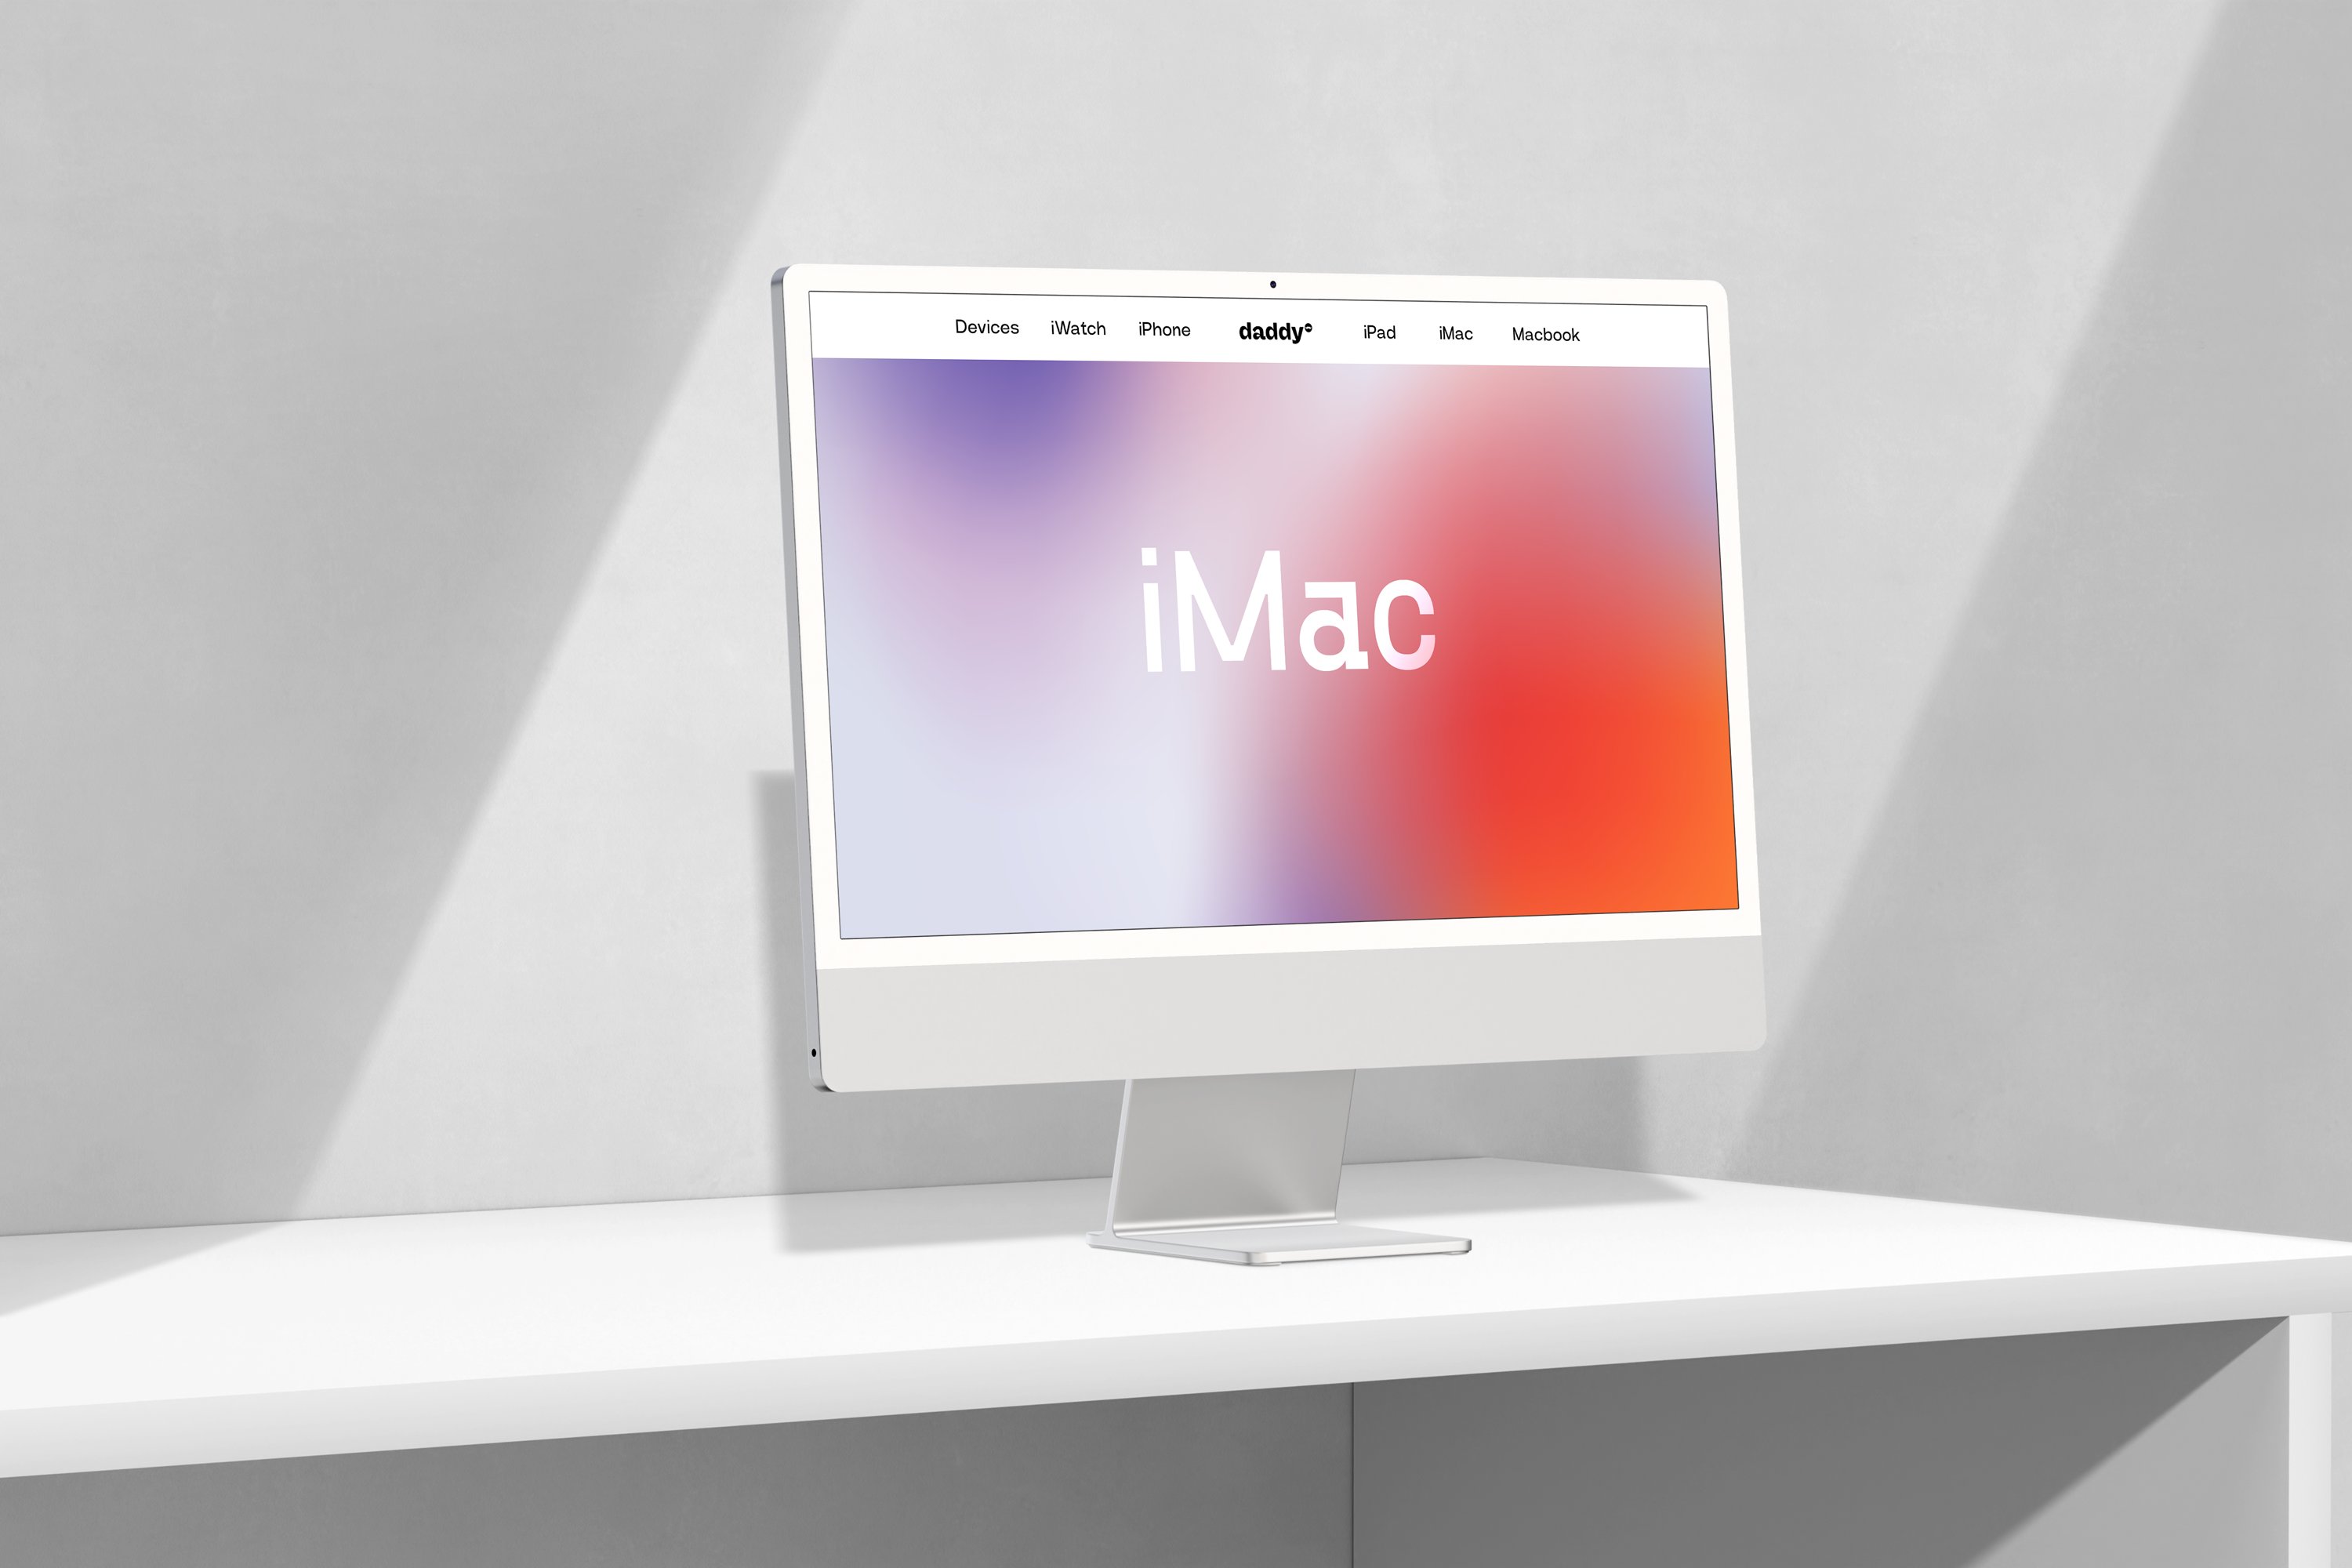 iMac Mockup Scene - 4 preview image.